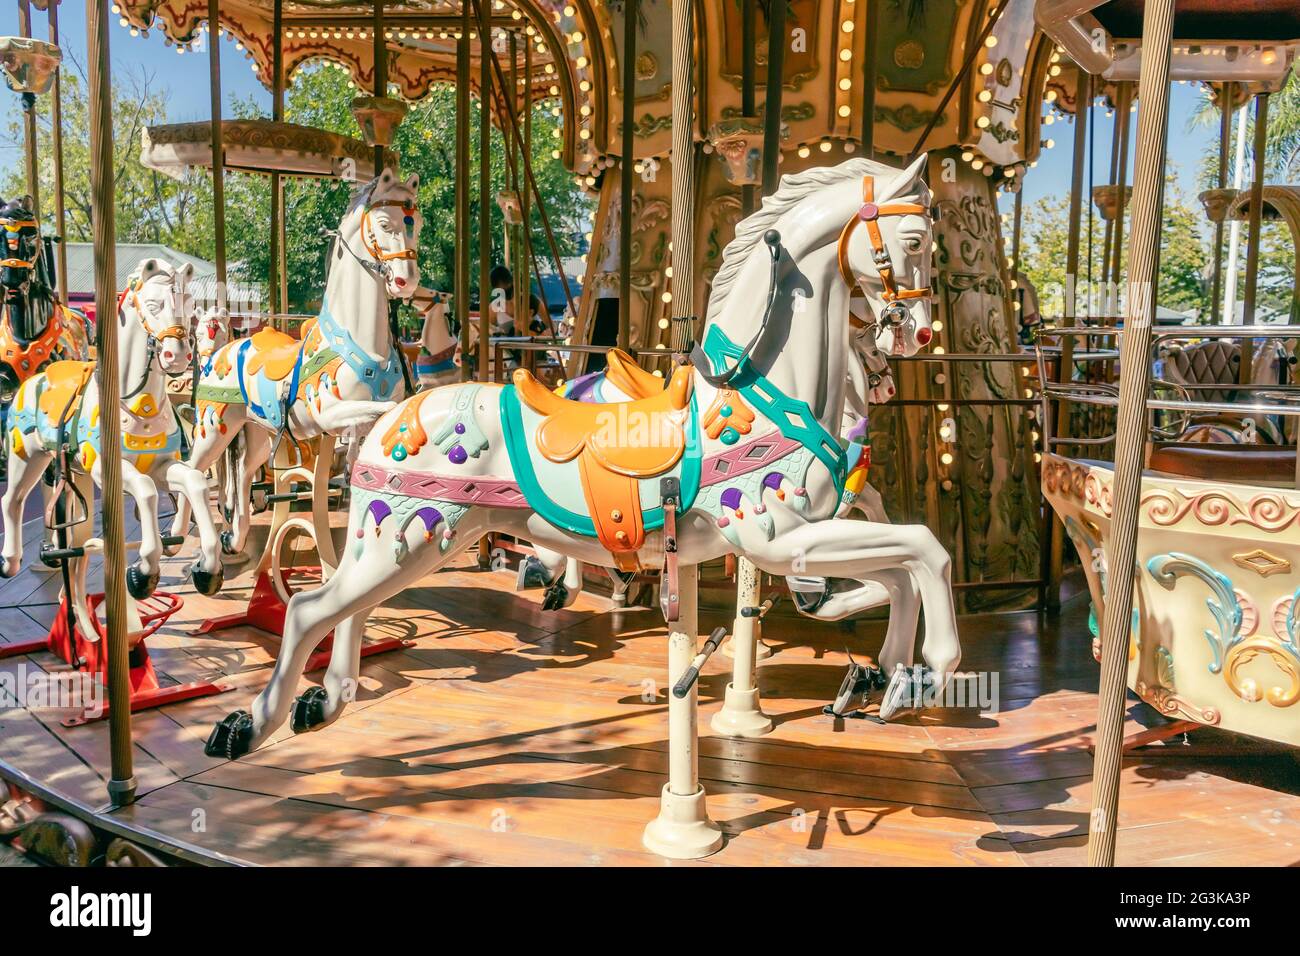 Fröhliches Karussell im Pariser Stil mit den Pferden im Vordergrund. Spaßkonzept für Kinder Stockfoto